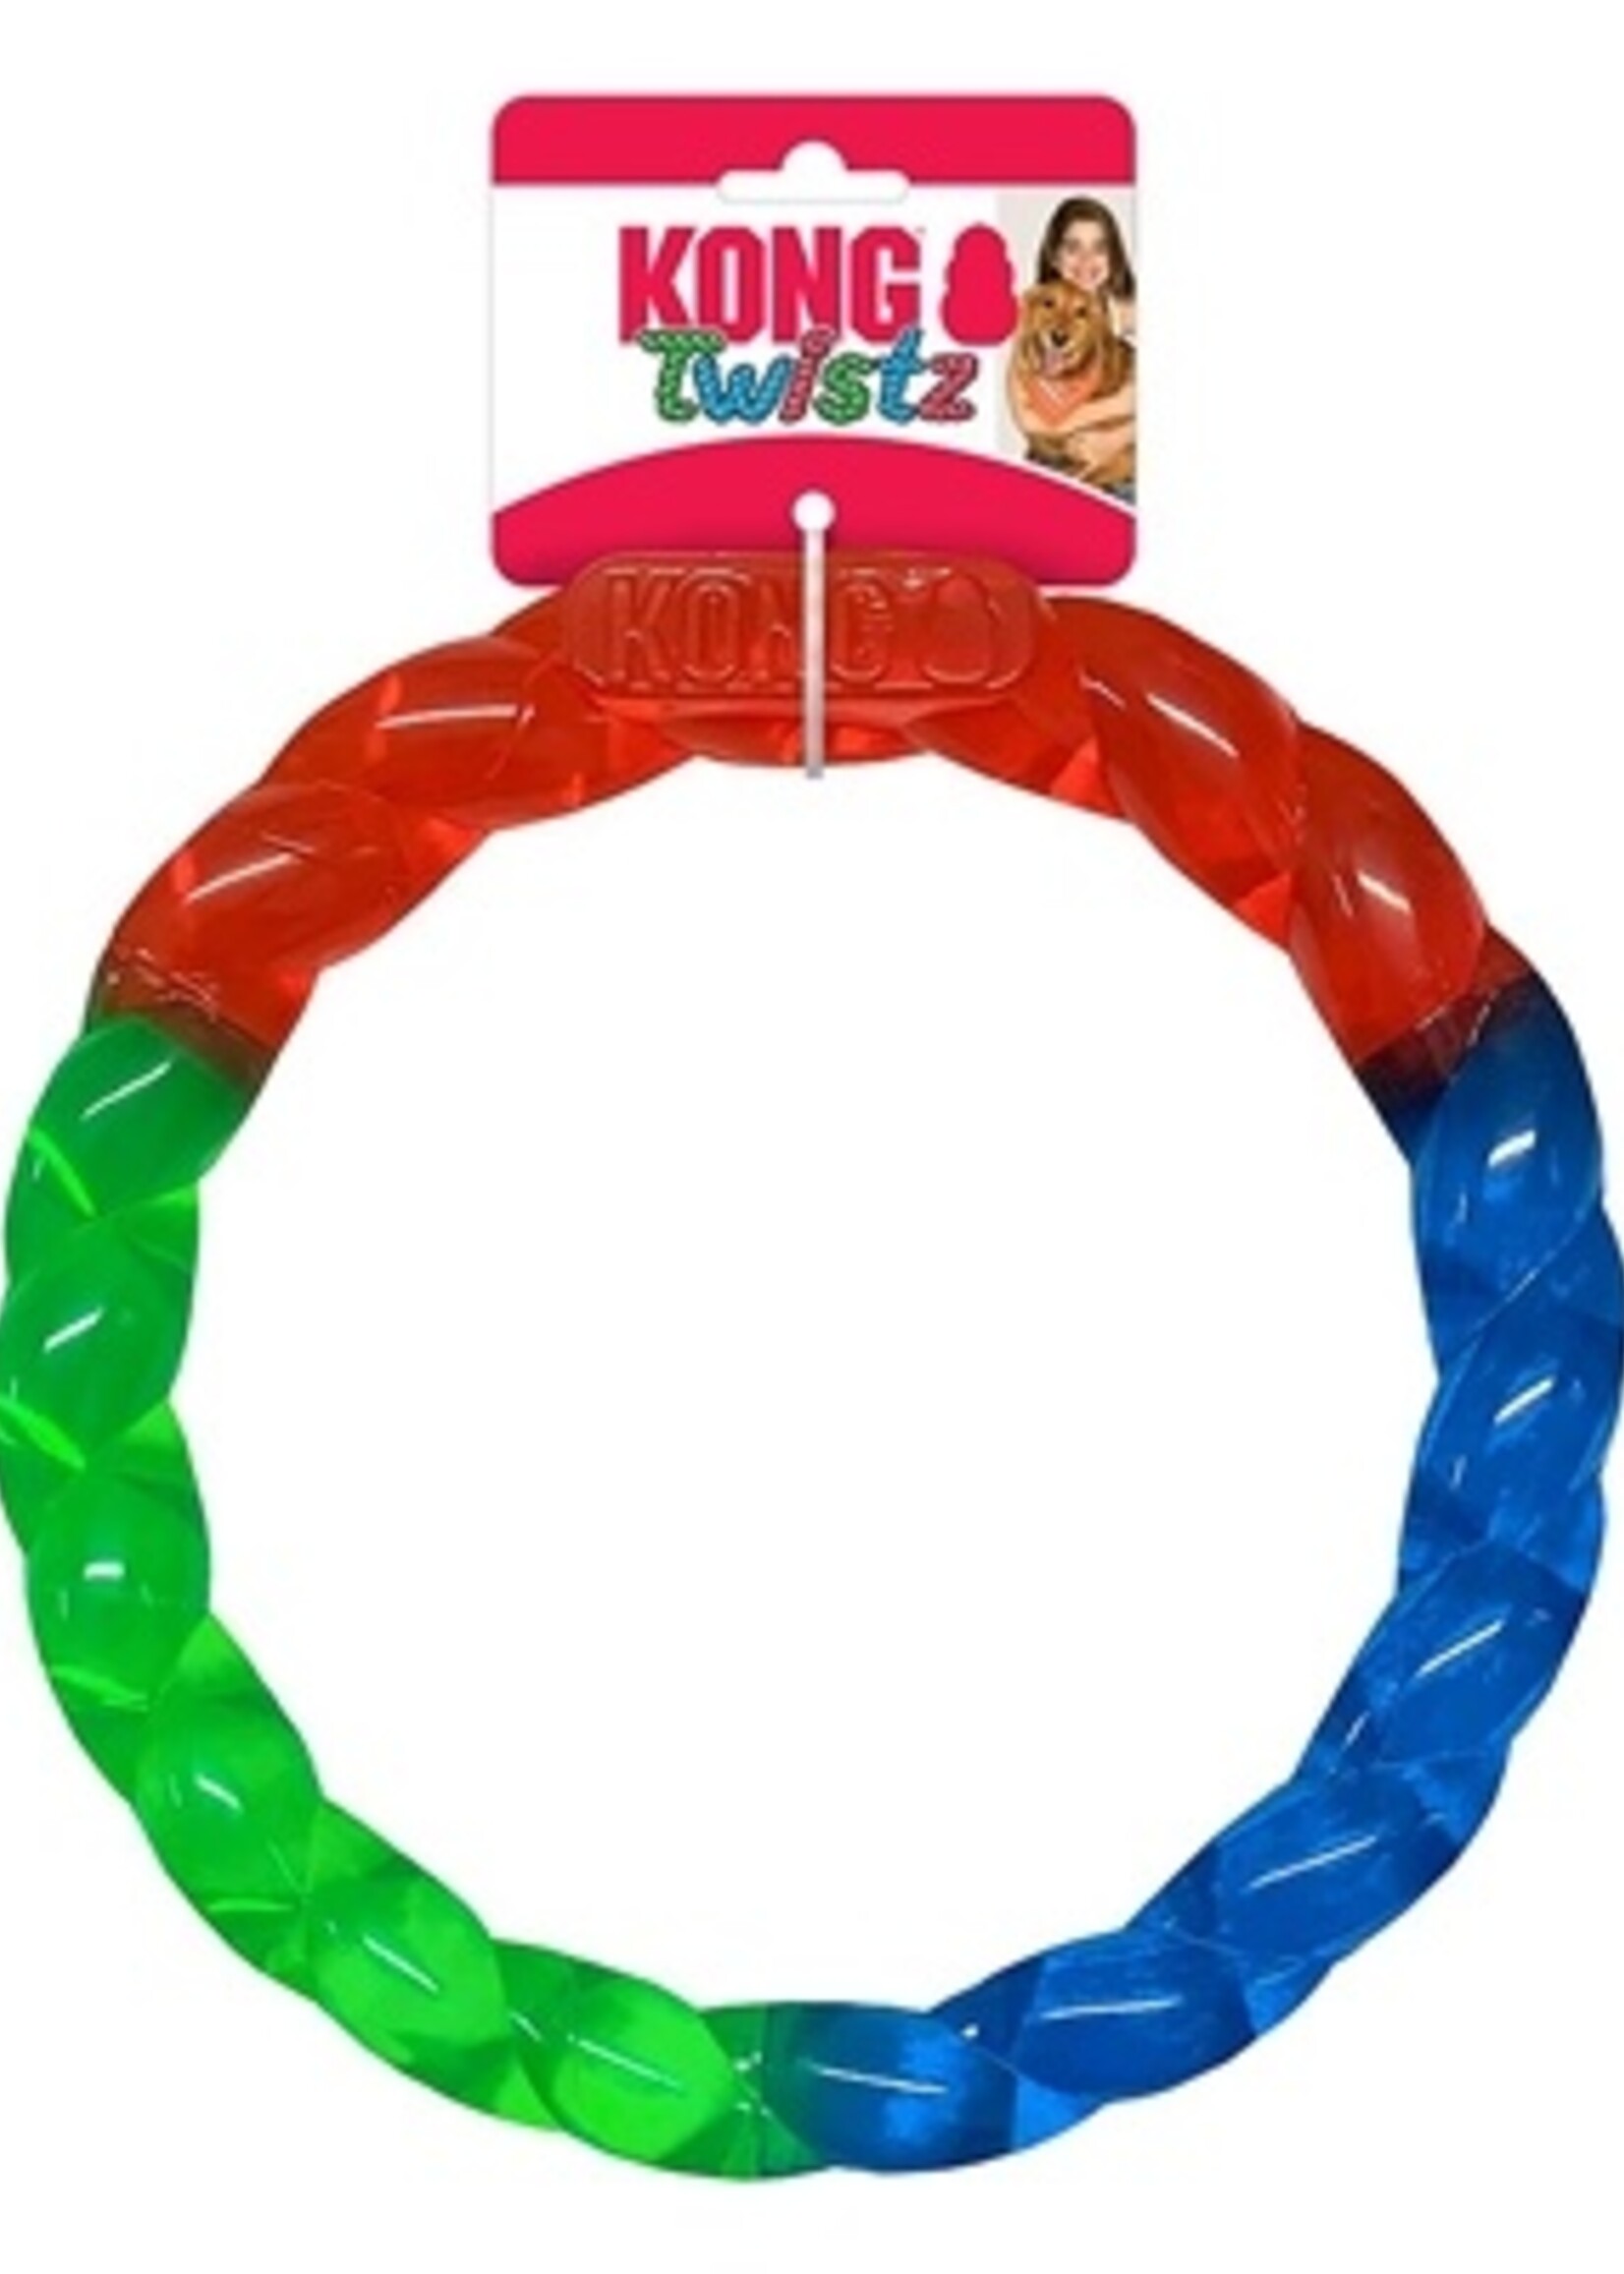 Kong Kong twistz ring